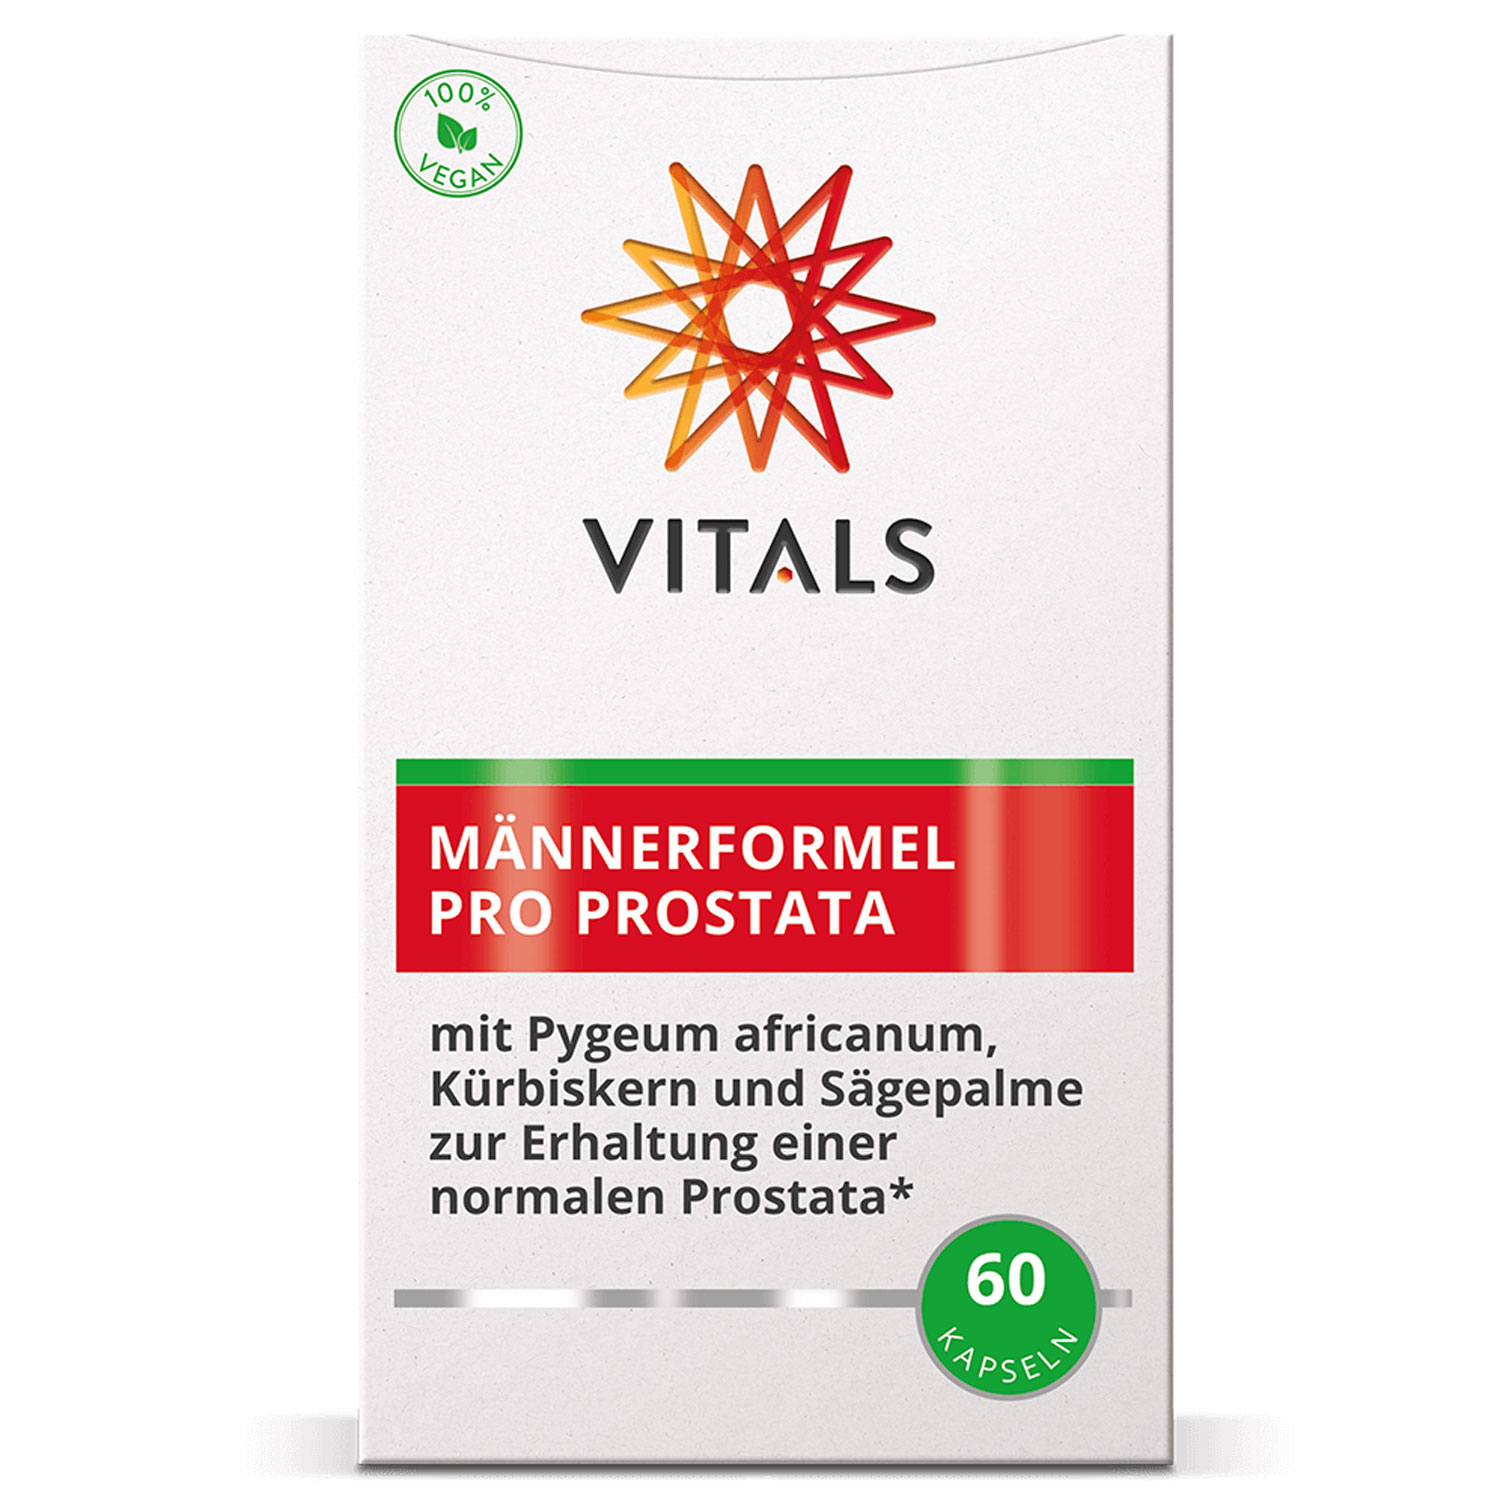 Männerformel Pro Prostata von Vitals - Verpackung